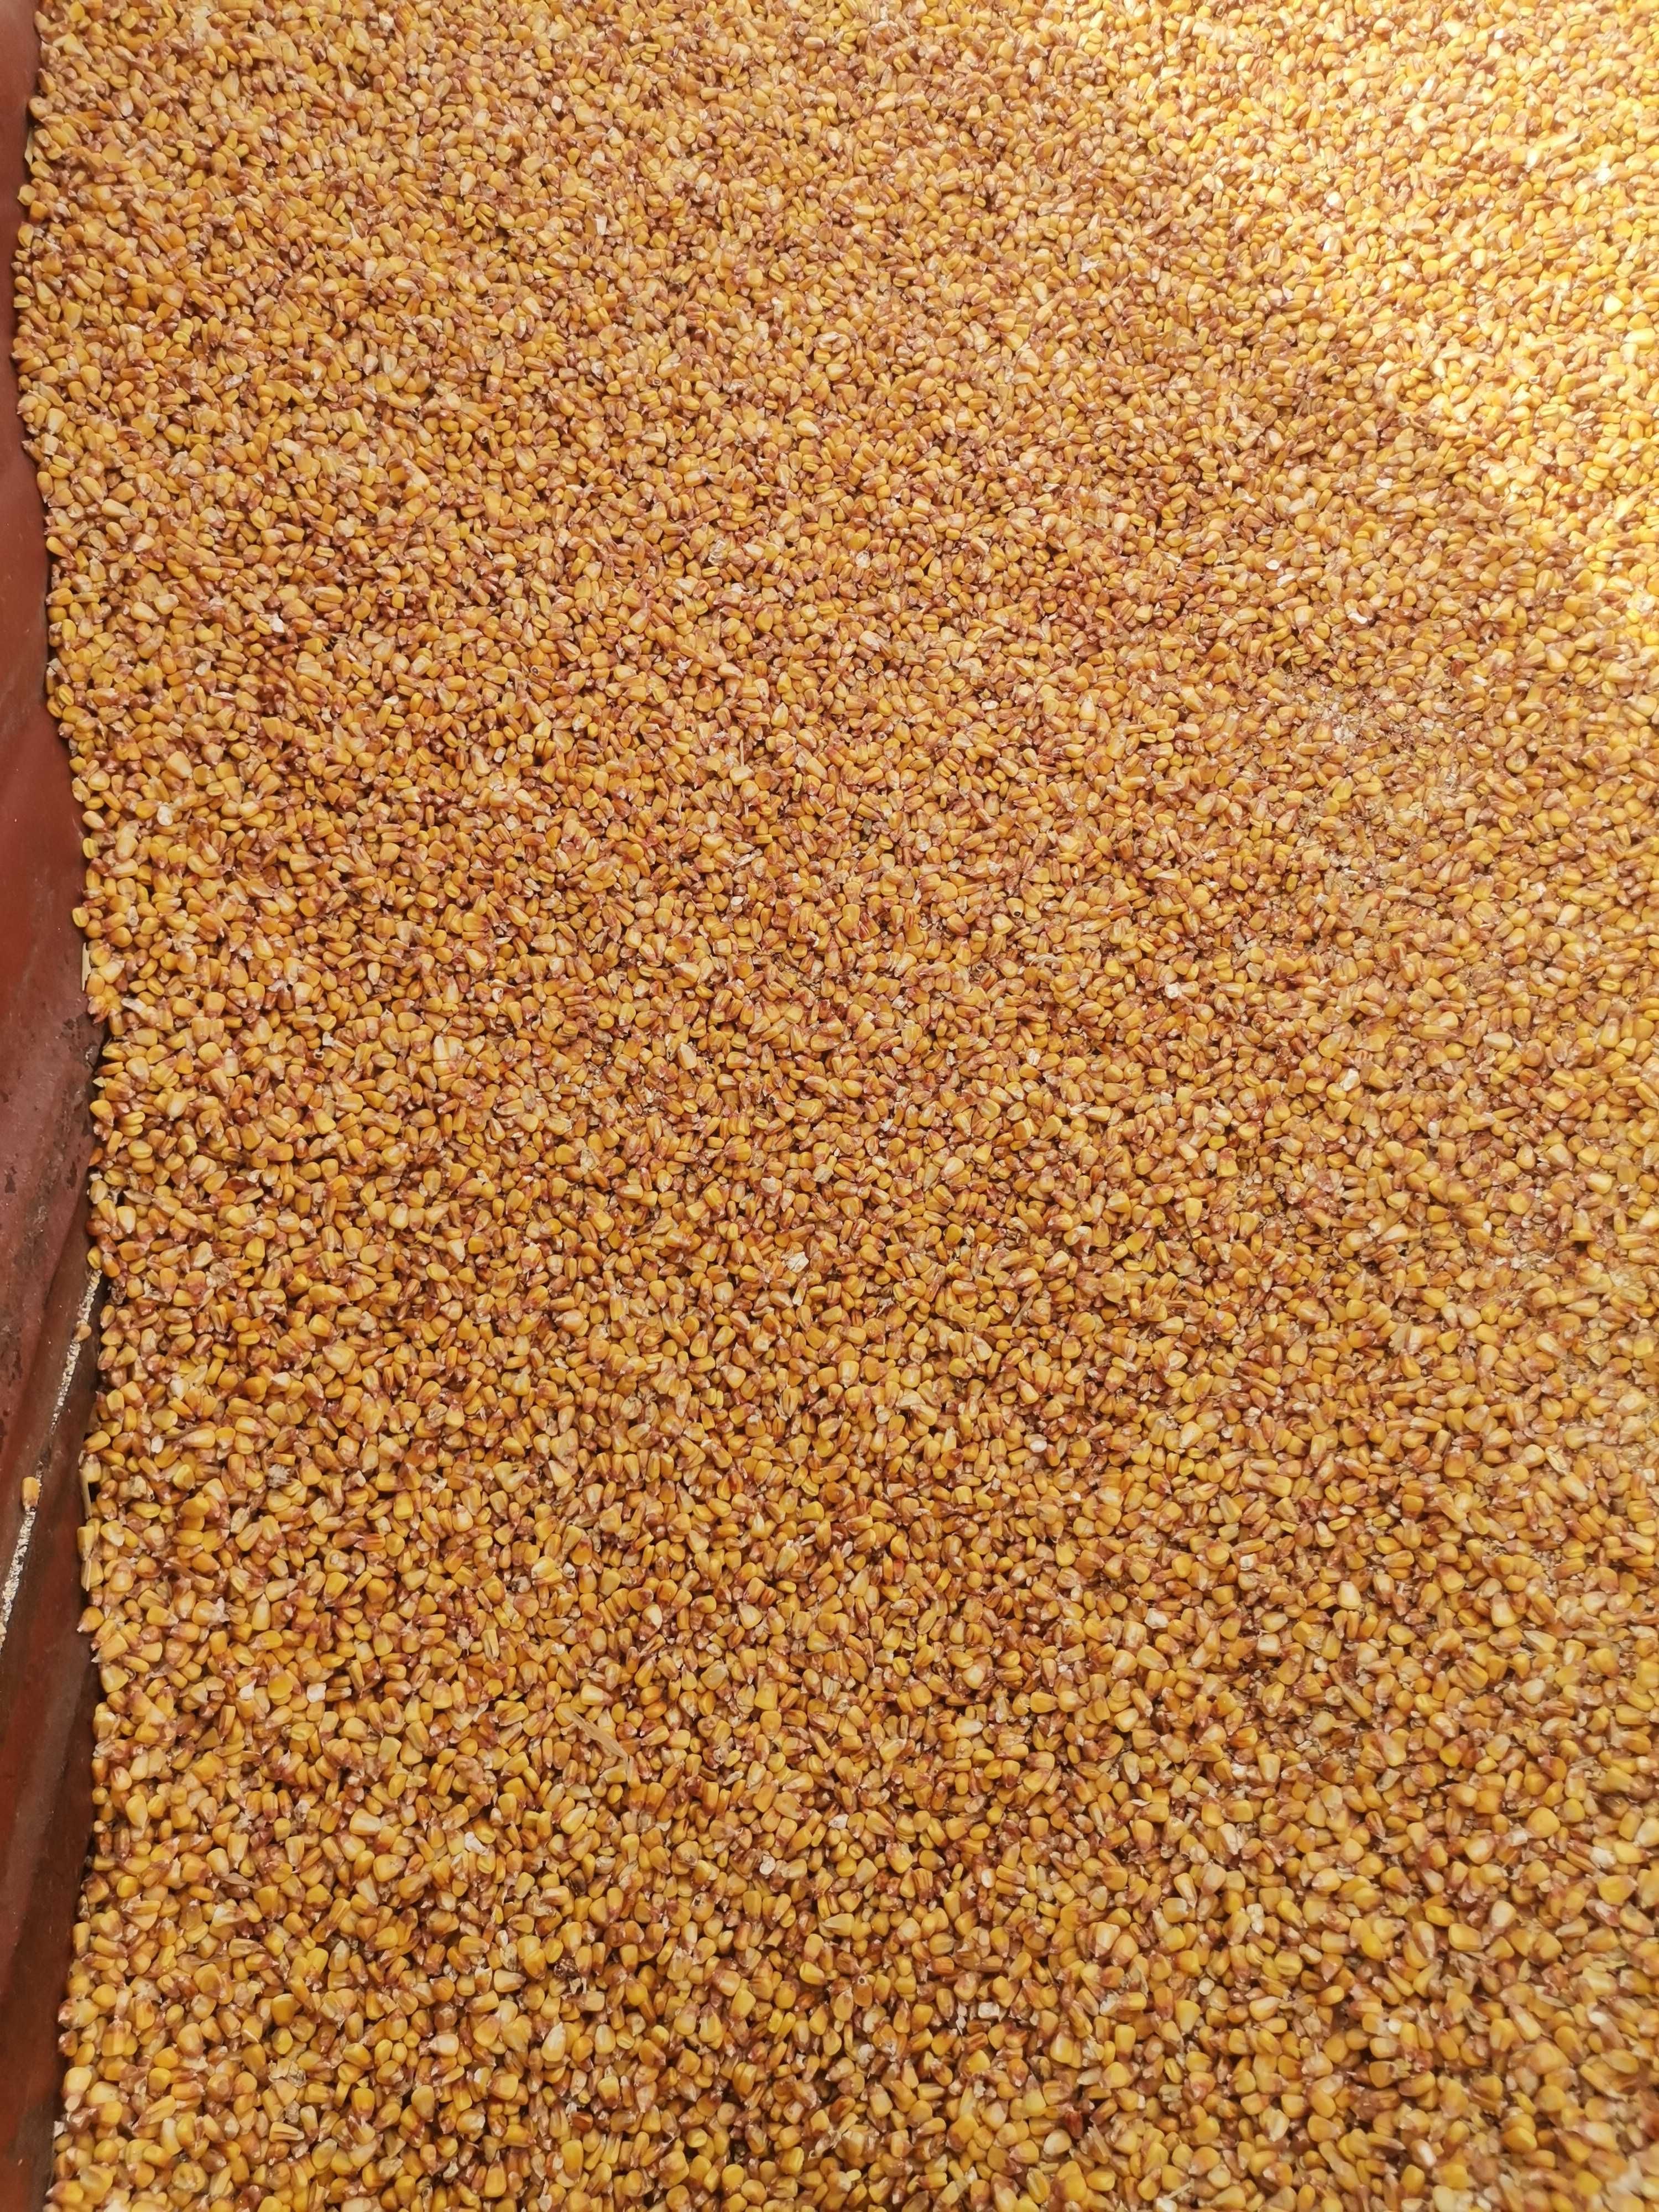 Białkowa 32-35% bigbag śruta sojowa rzepakowa ddgs ccm kukurydziany